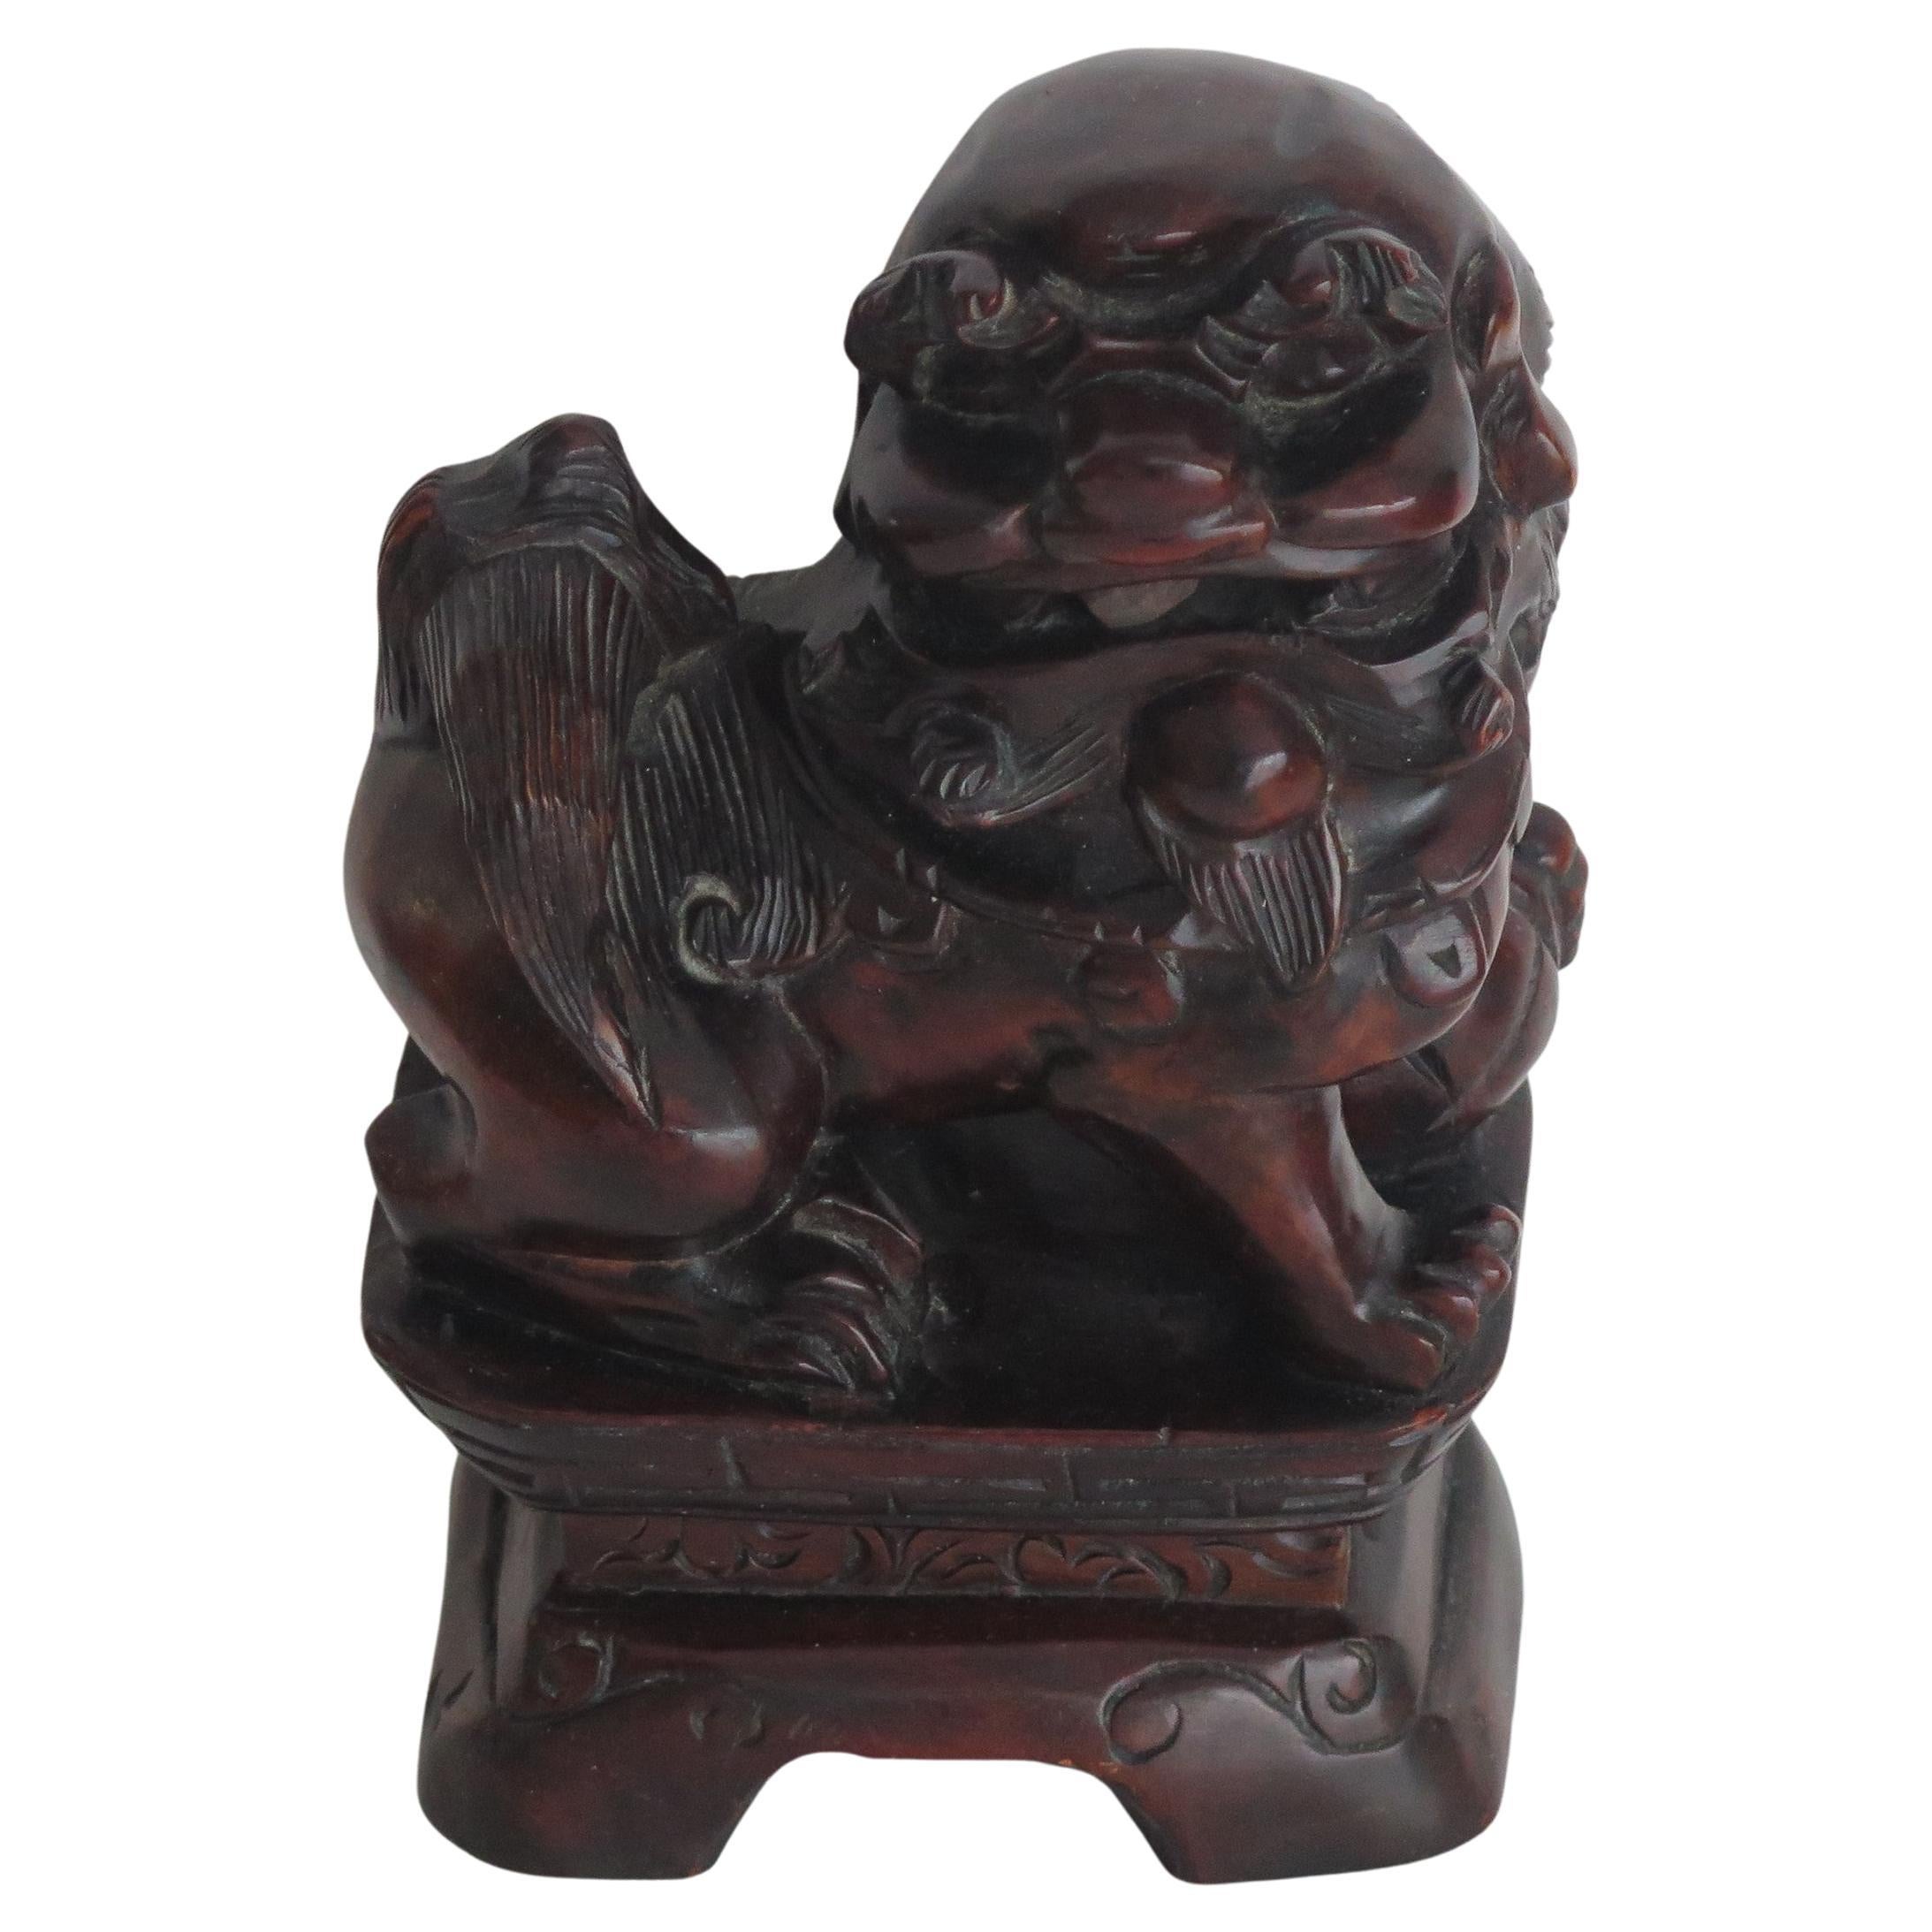 Dies ist ein guter chinesischer Foo Dog aus Hartholz, manchmal auch als Tempellöwe bezeichnet, den wir auf die späte Qing-Periode um 1900 datieren.

Das Stück ist handgeschnitzt und stellt einen wilden Hund oder Löwen dar, der auf einem